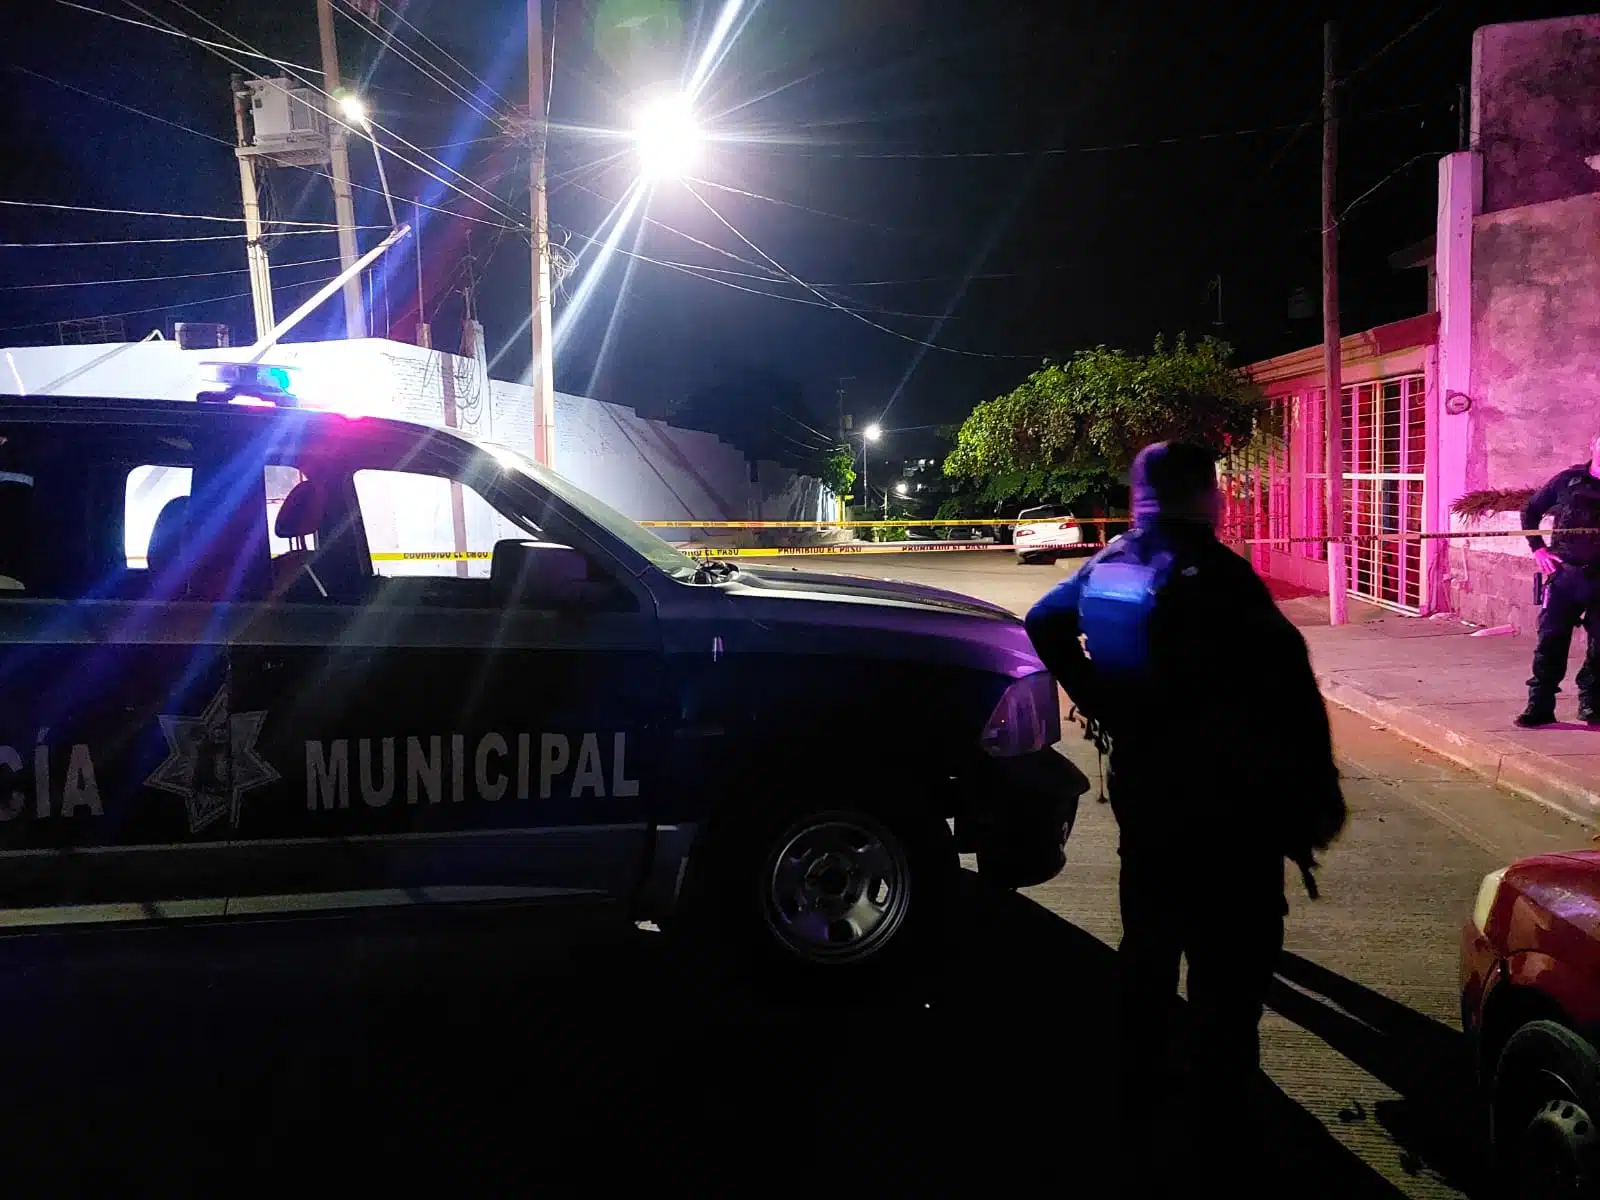 Camioneta de la Policía Municipal de Culiacán en el lugar donde asesinaron a dos jóvenes